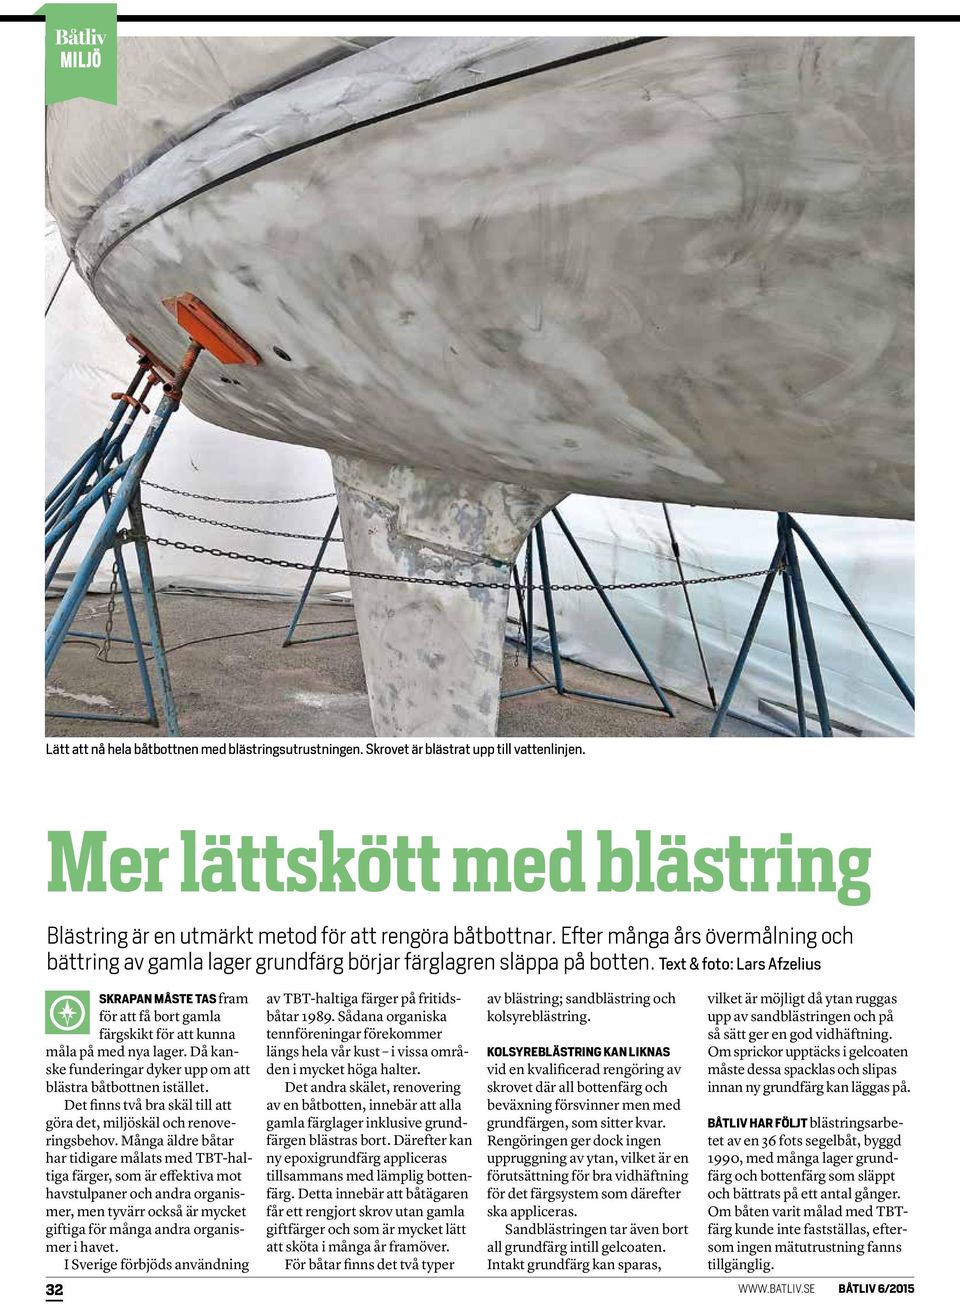 Text & foto: Lars Afzelius SKRAPAN MÅSTE TAS fram för att få bort gamla färgskikt för att kunna måla på med nya lager. Då kanske funderingar dyker upp om att blästra båtbottnen istället.